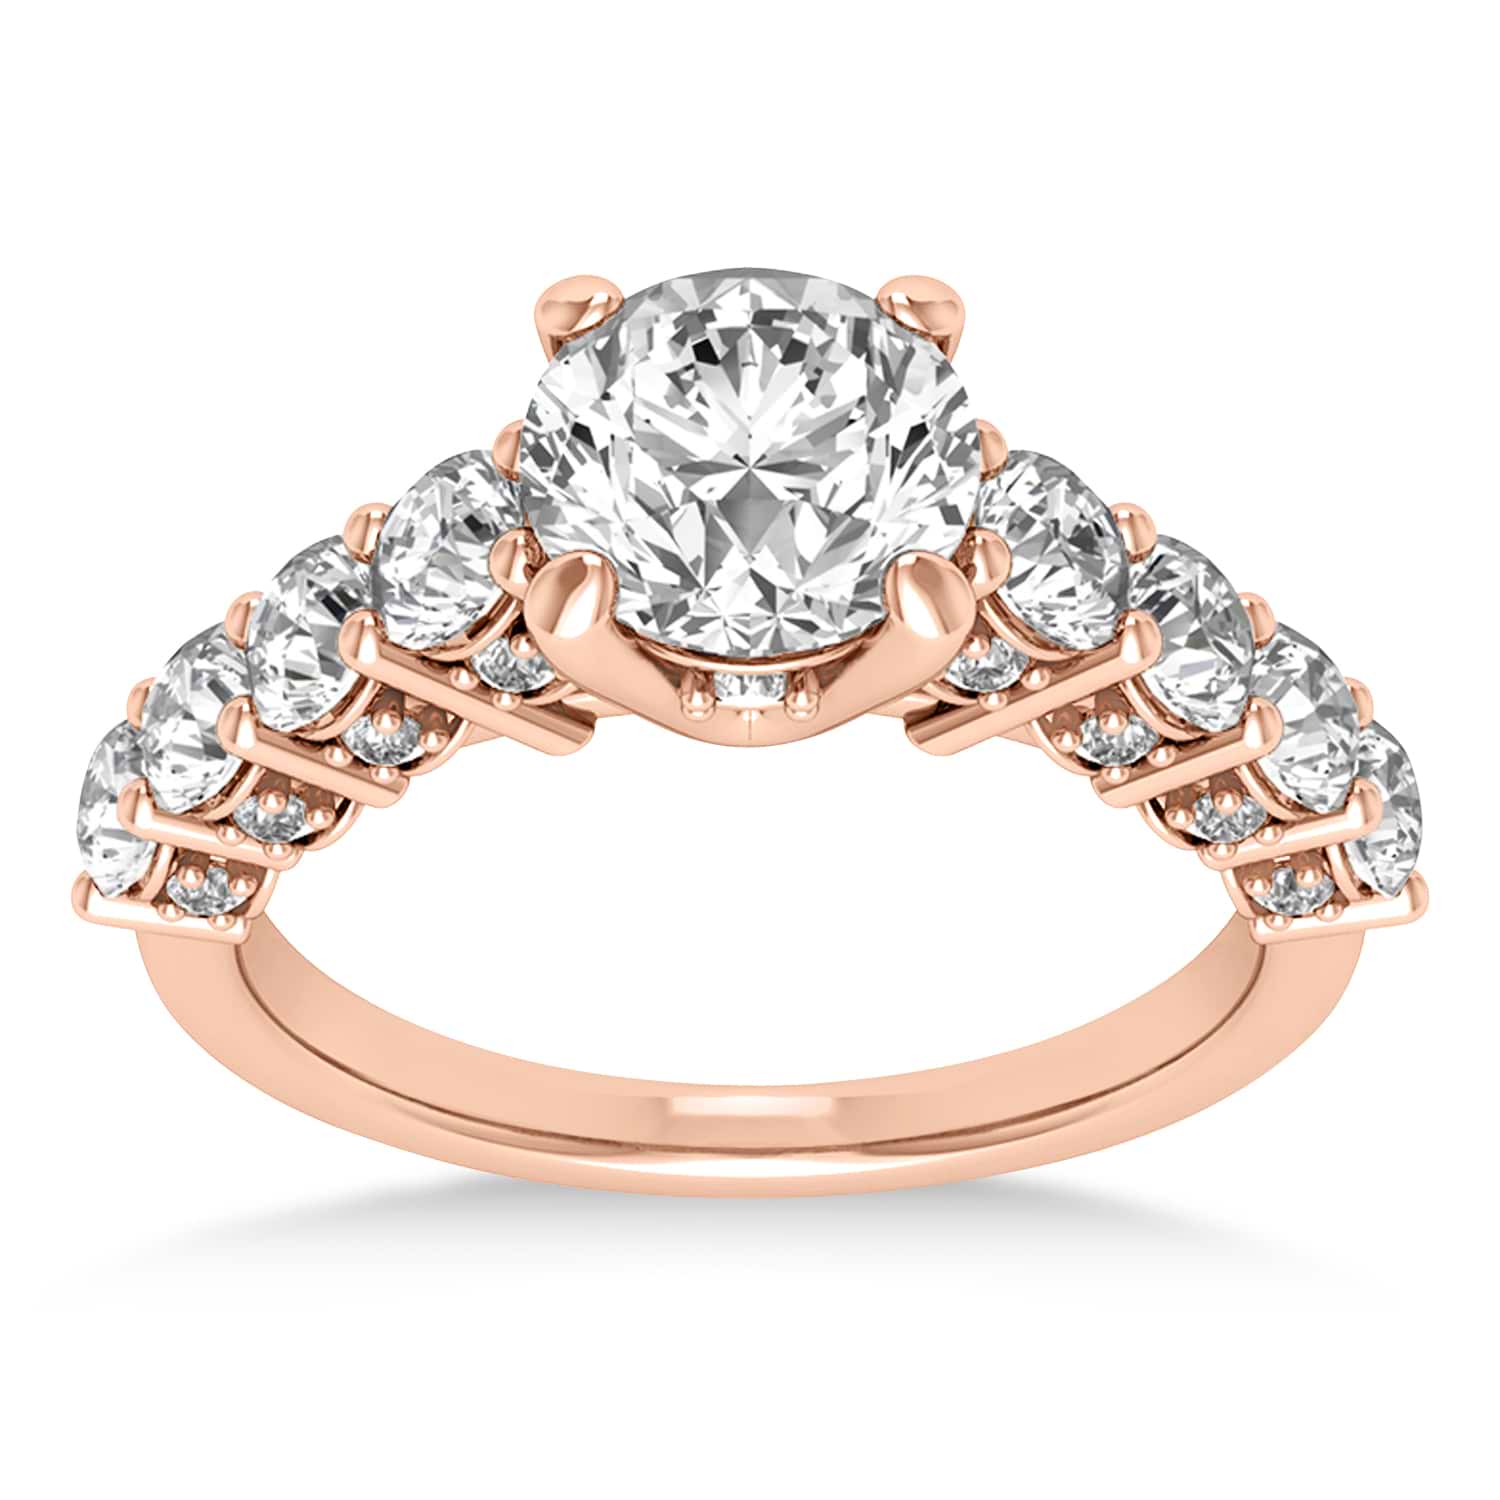 Diamond Prong Set Engagement Ring 18k Rose Gold (1.06ct)